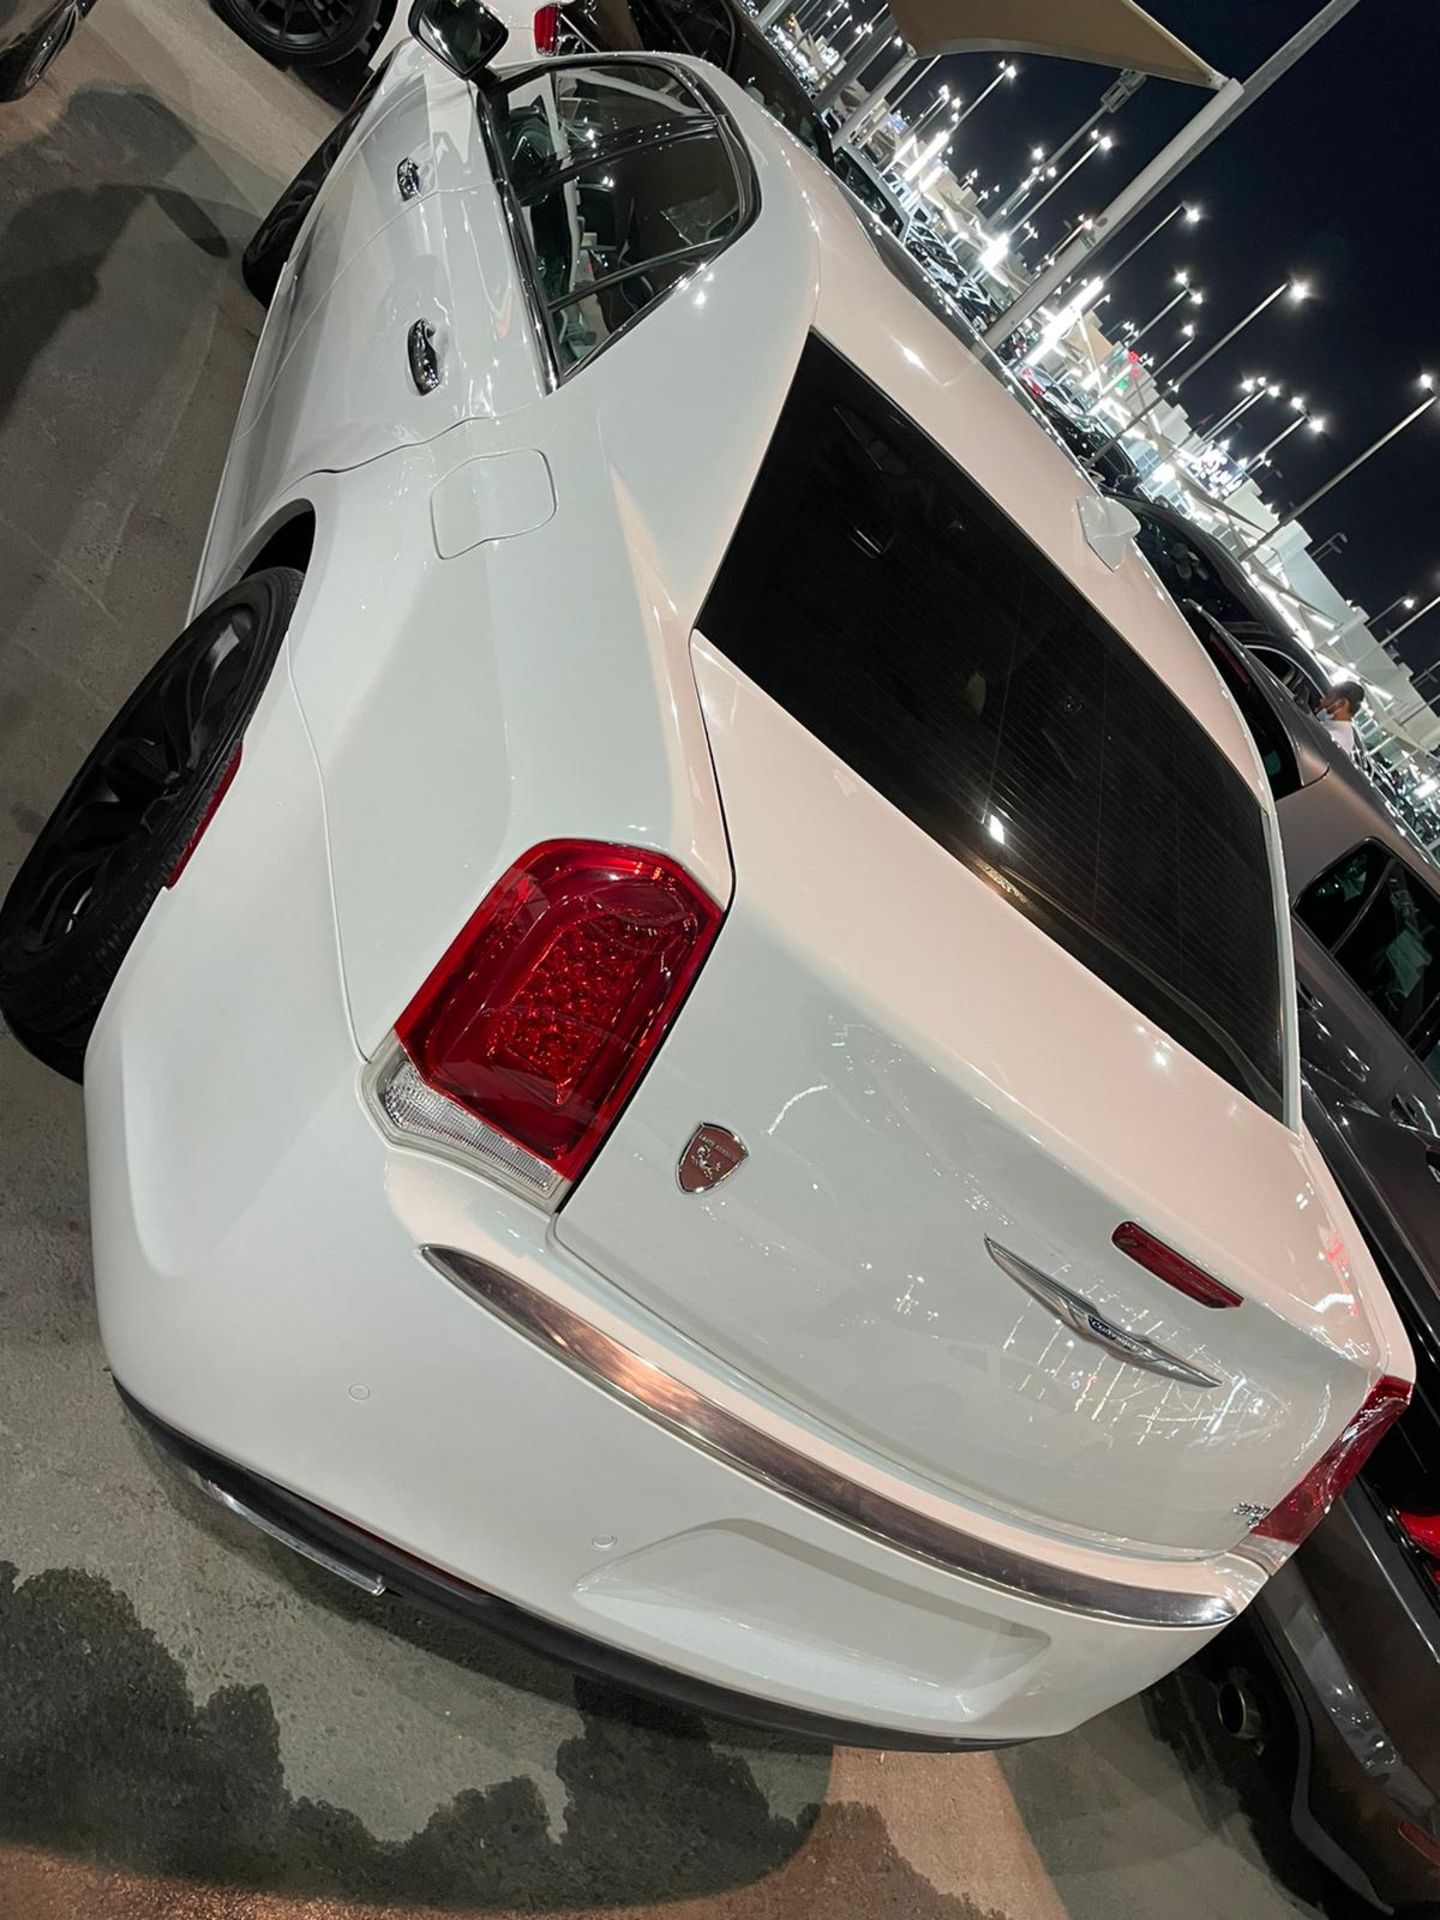 2015 Chrysler 300 Hemi 44,000km - sold with nova in uk mid feb *PLUS VAT* - Image 8 of 13